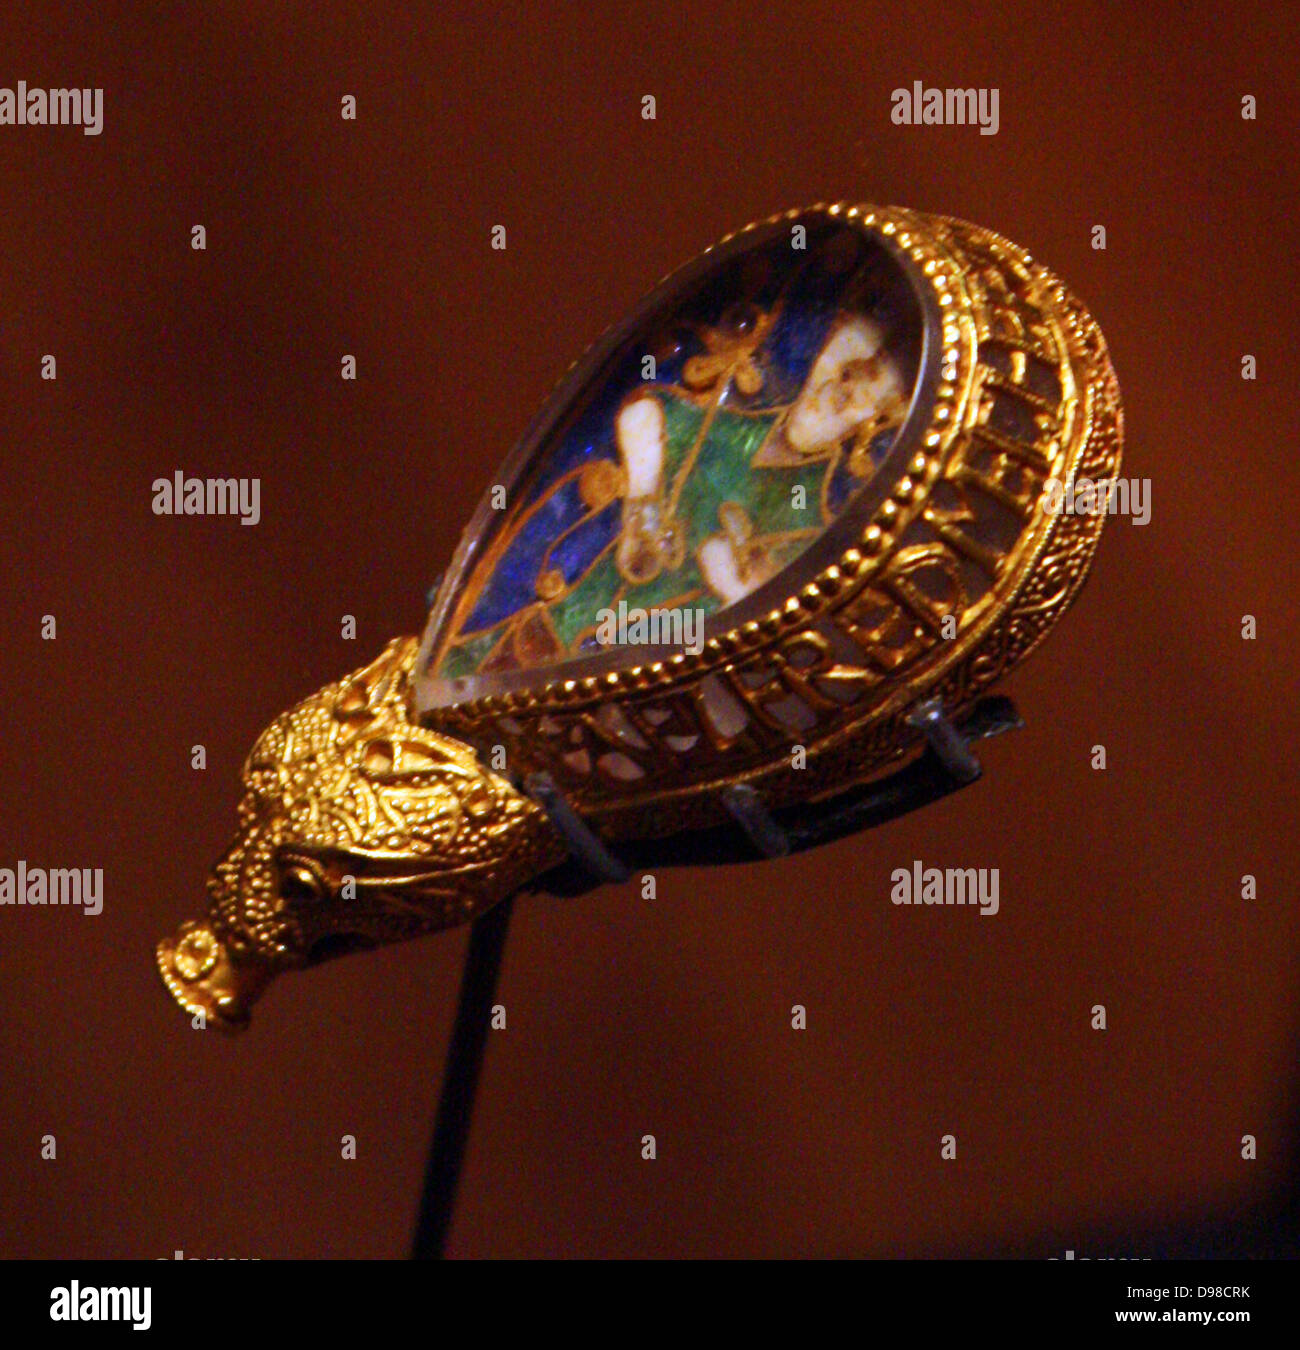 Die Alfred Juwel ist wahrscheinlich die berühmteste archäologische Objekt in England. Es besteht aus einem Stück Cloisonne Emaille zeigt eine menschliche Figur, obwohl eine Darstellung der Sehsinn. Der Zahnschmelz wird durch einen polierten Stück Bergkristall abgedeckt und in einem goldenen Rahmen, in der ein Tier Kopf beendet. Stockfoto